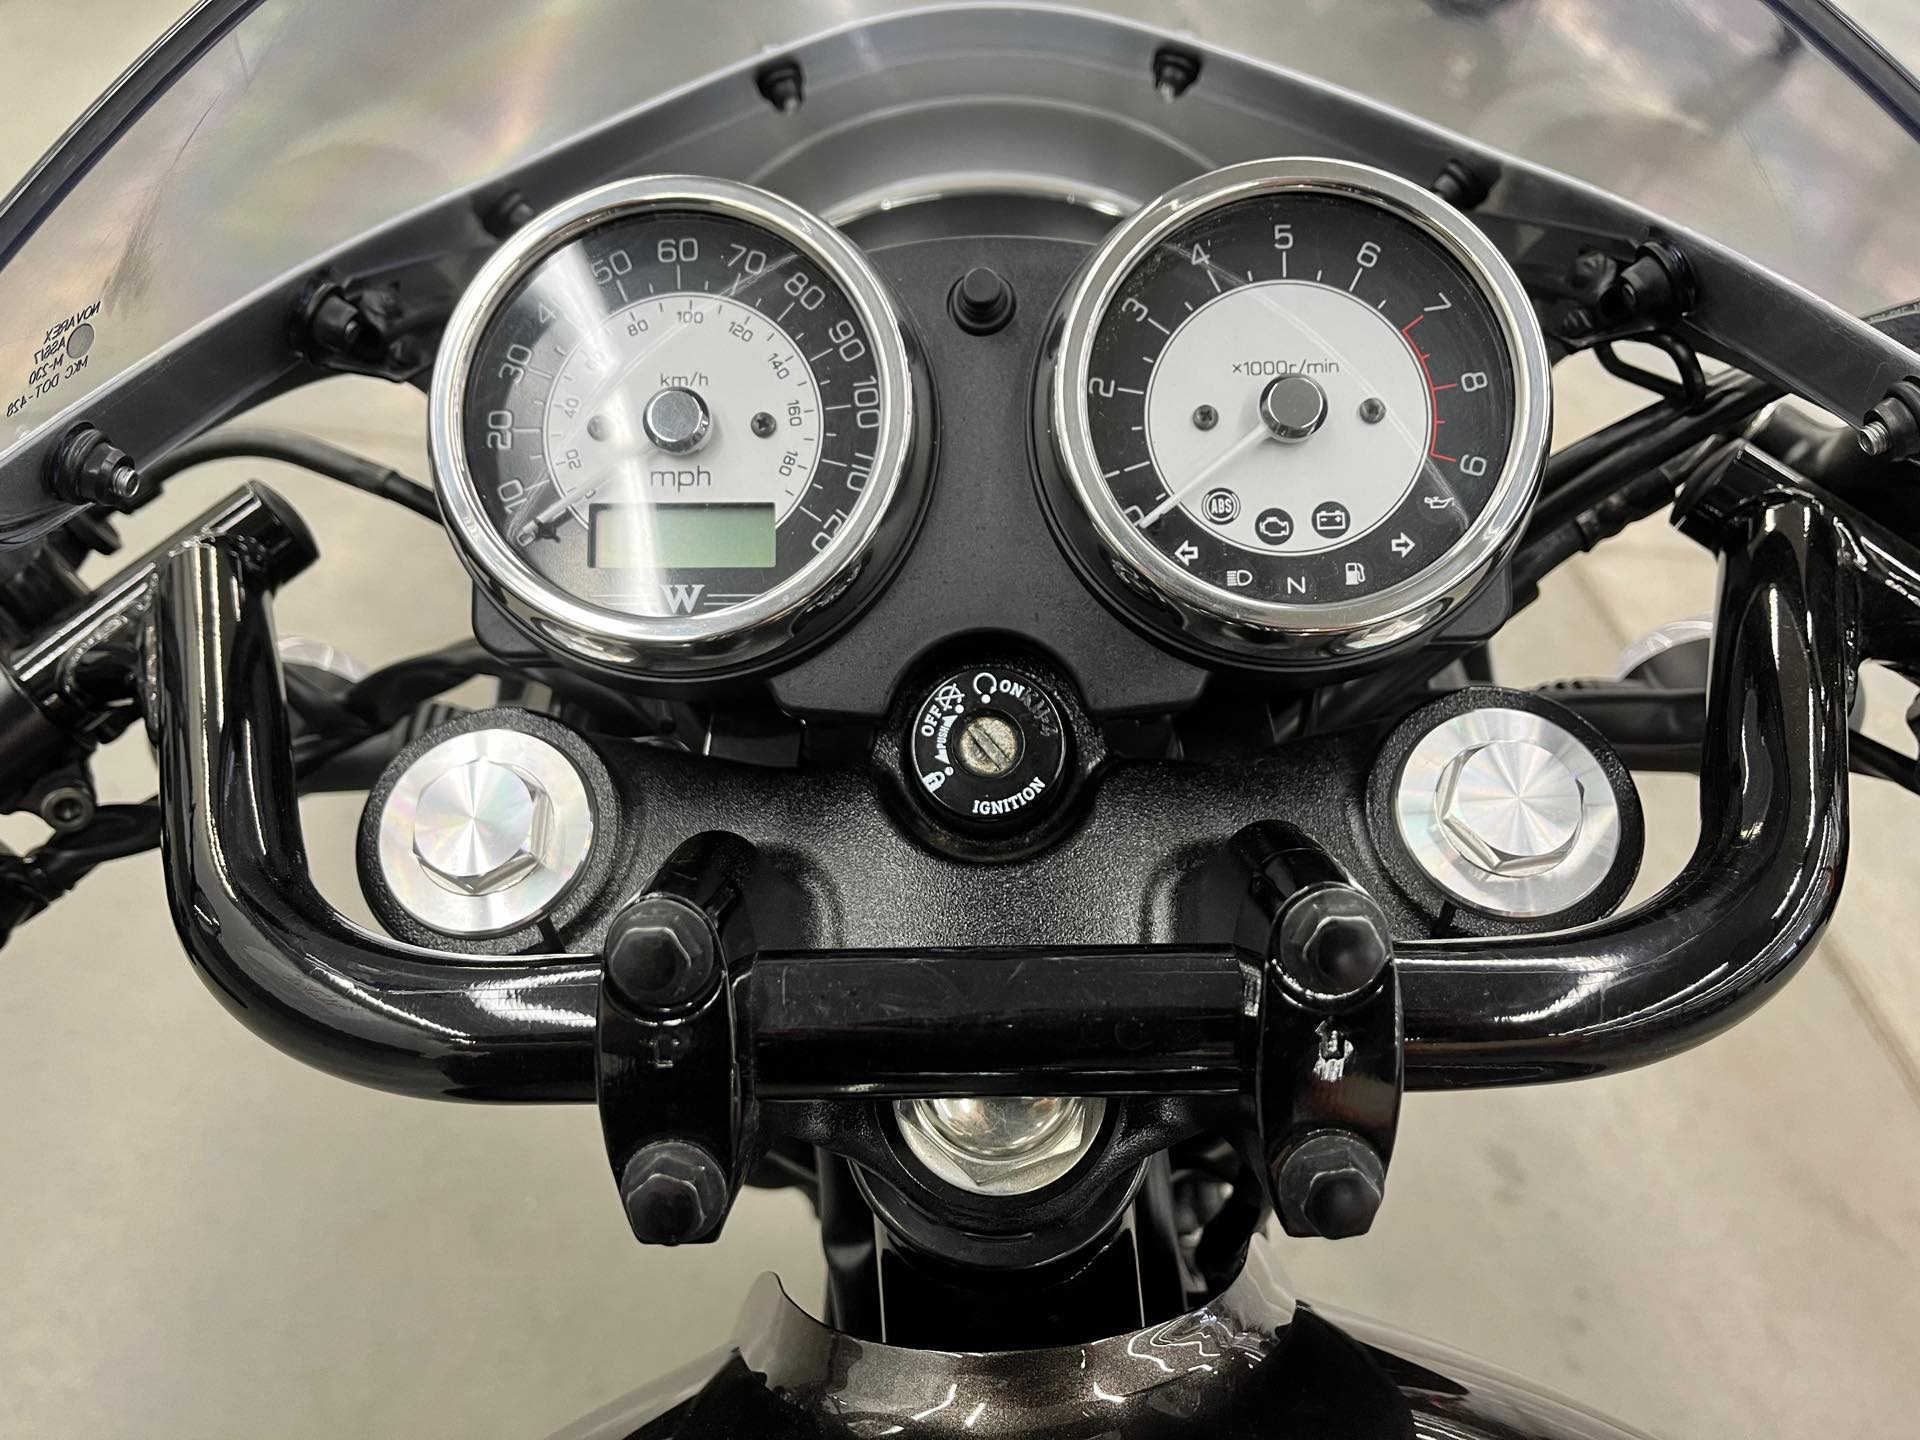 2019 Kawasaki W800 Cafe at Aces Motorcycles - Denver